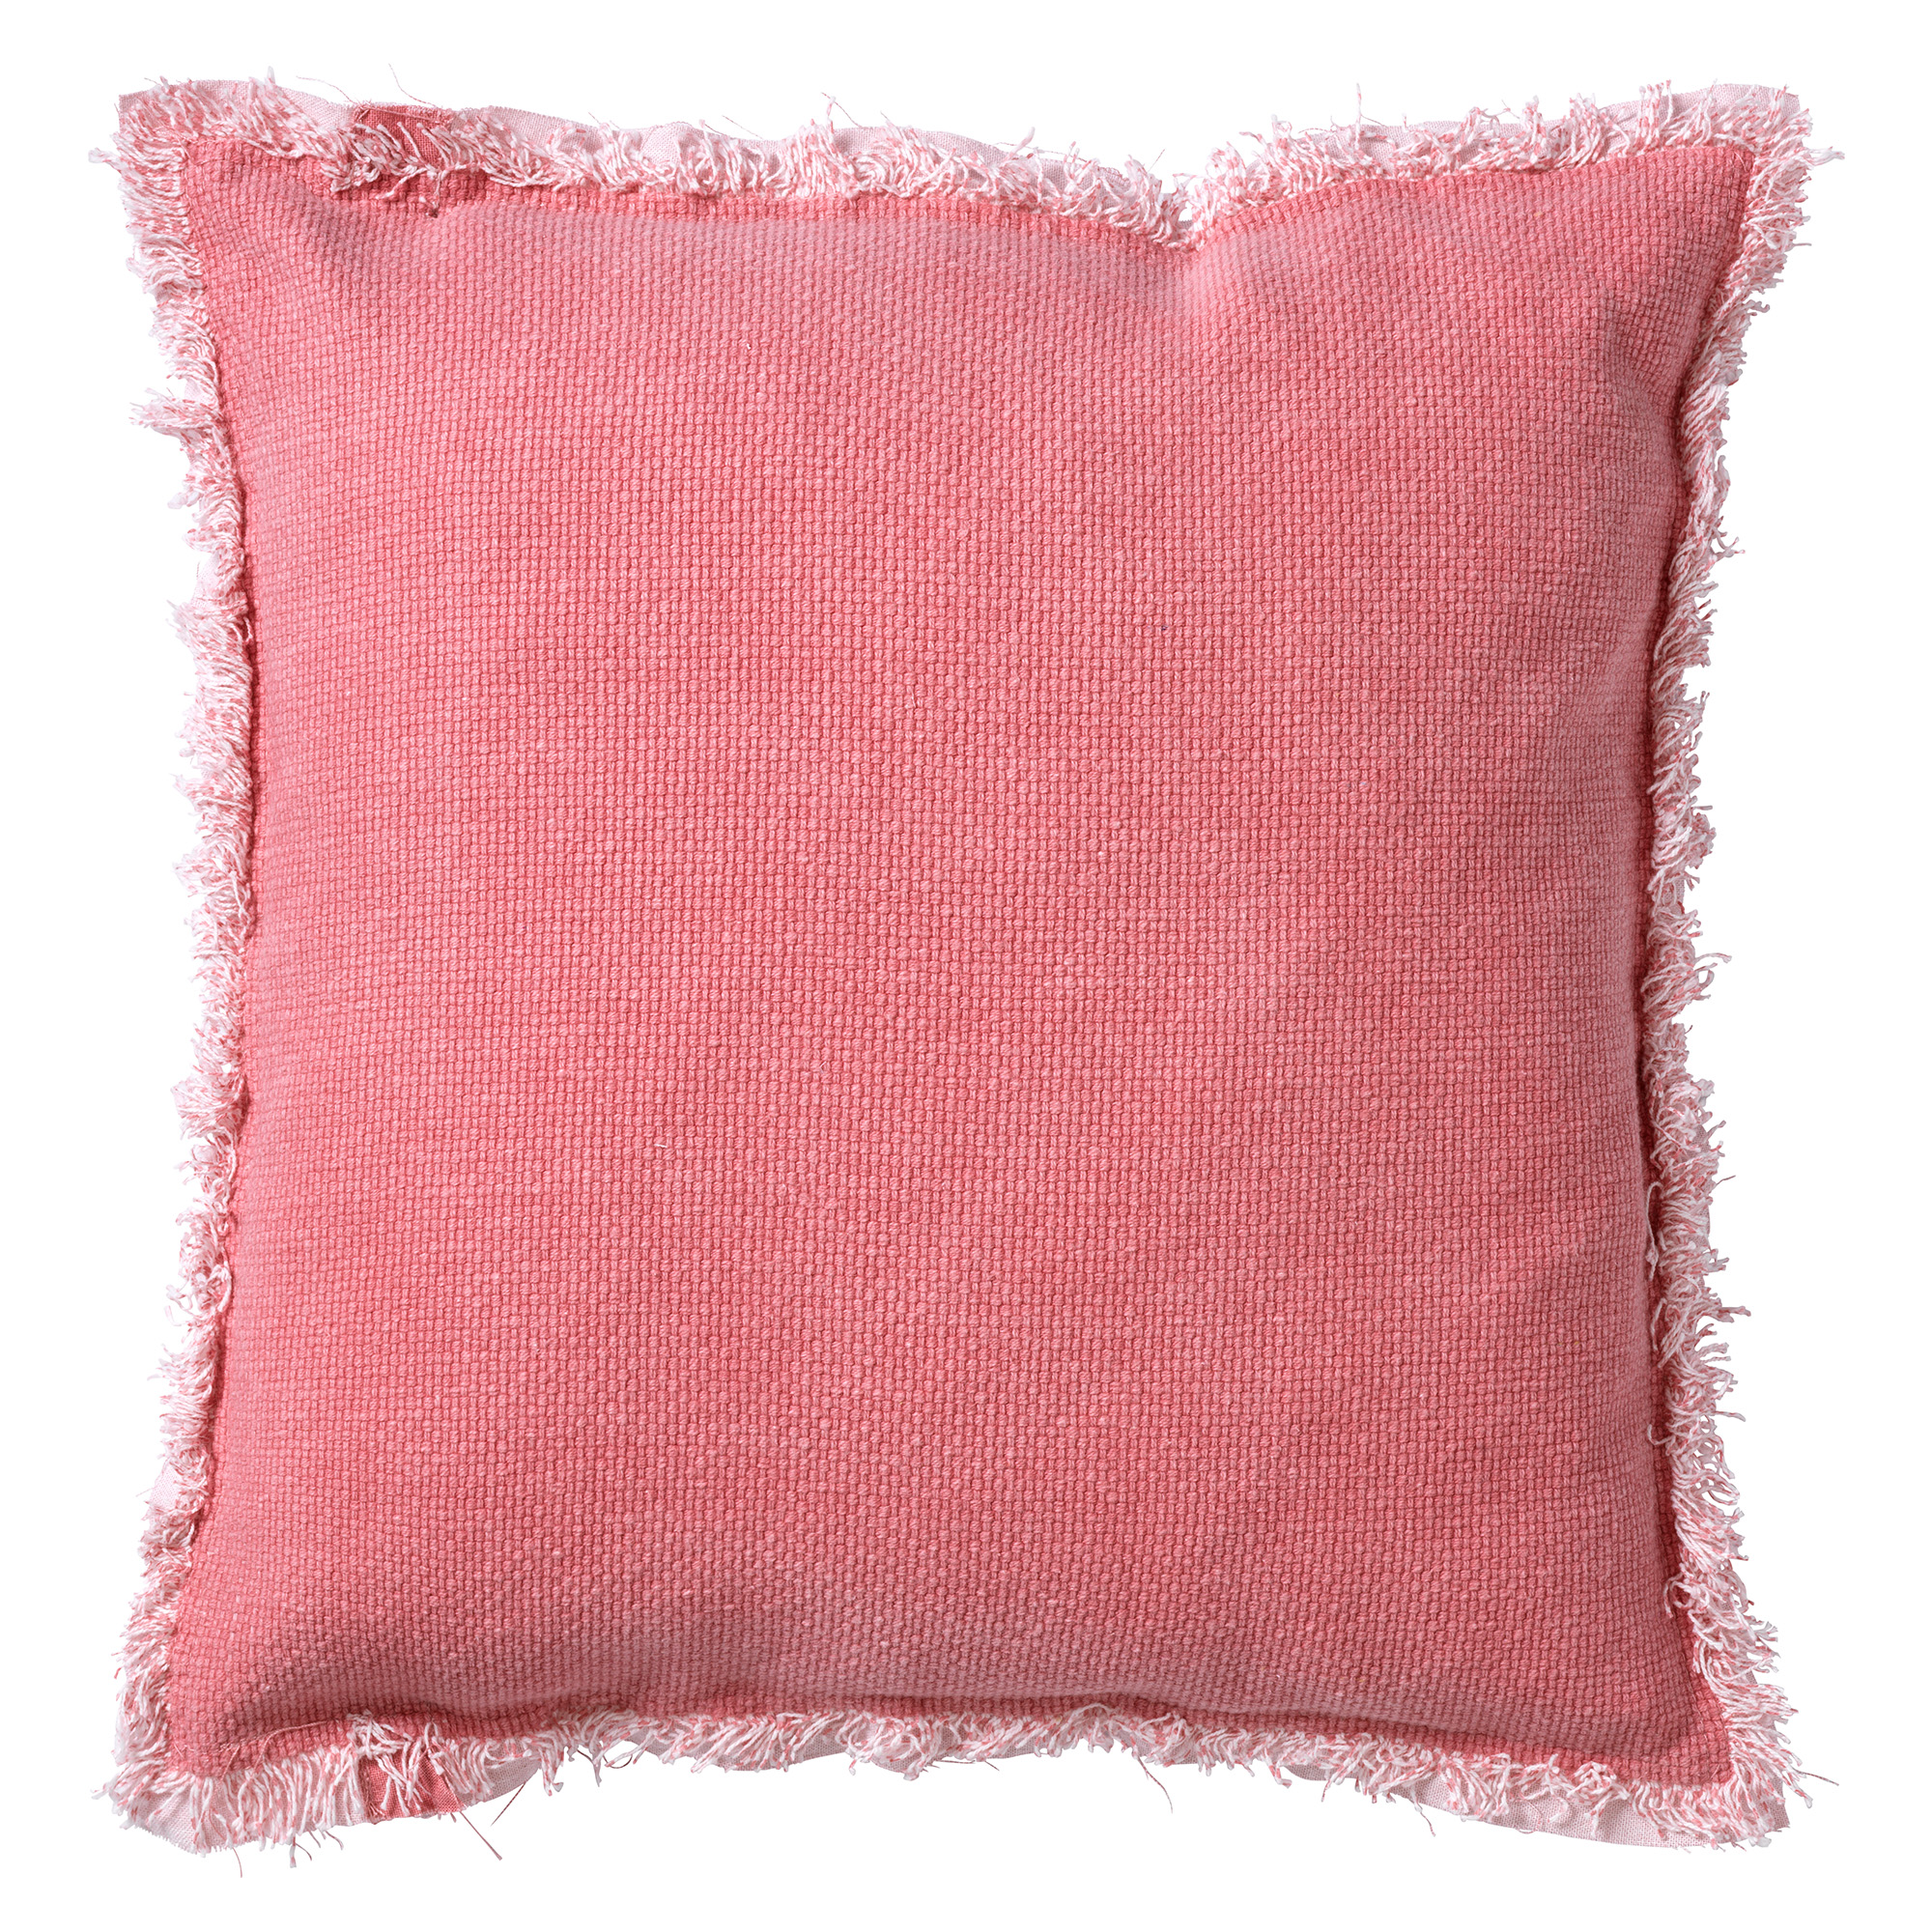 BURTO - Sierkussen van gewassen katoen framboos 45x45 cm - roze